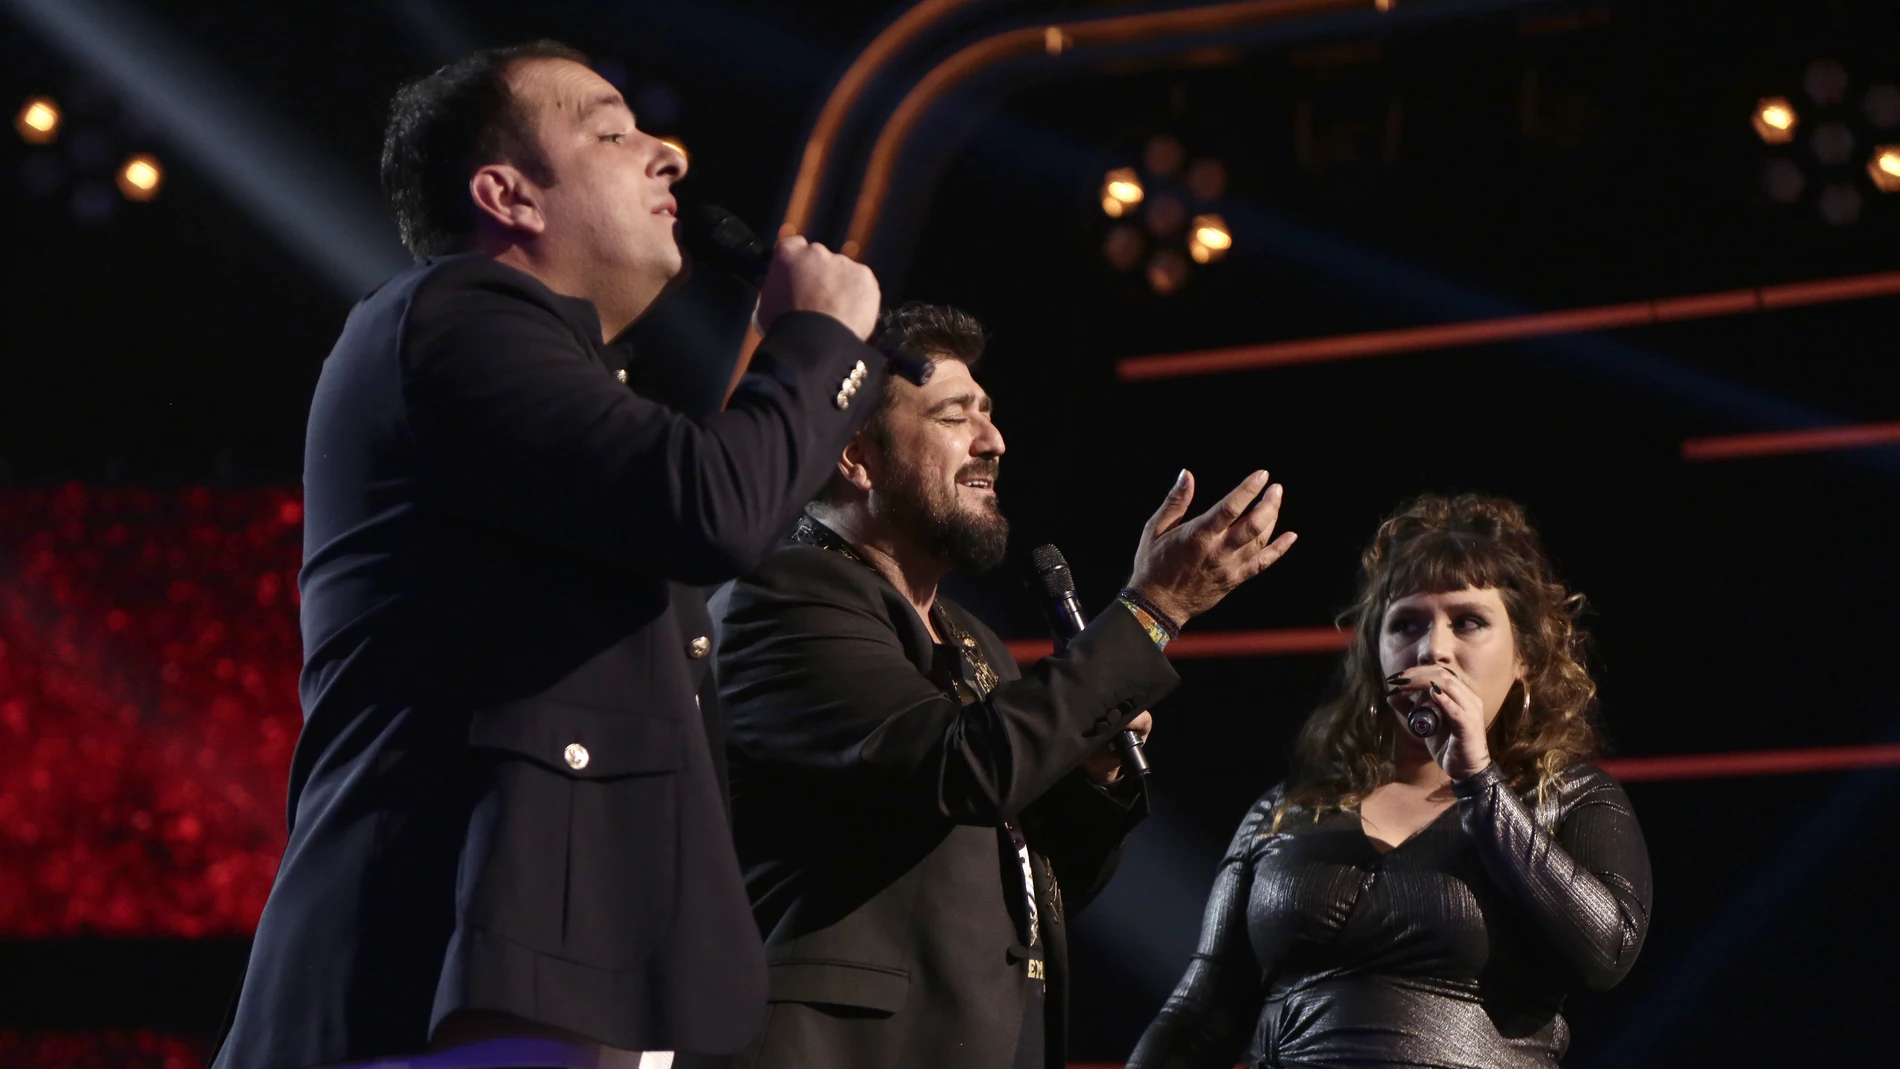 Antonio Orozco canta ‘Temblando’ con Lia Kali y Javi Moya en los Directos de ‘La Voz’